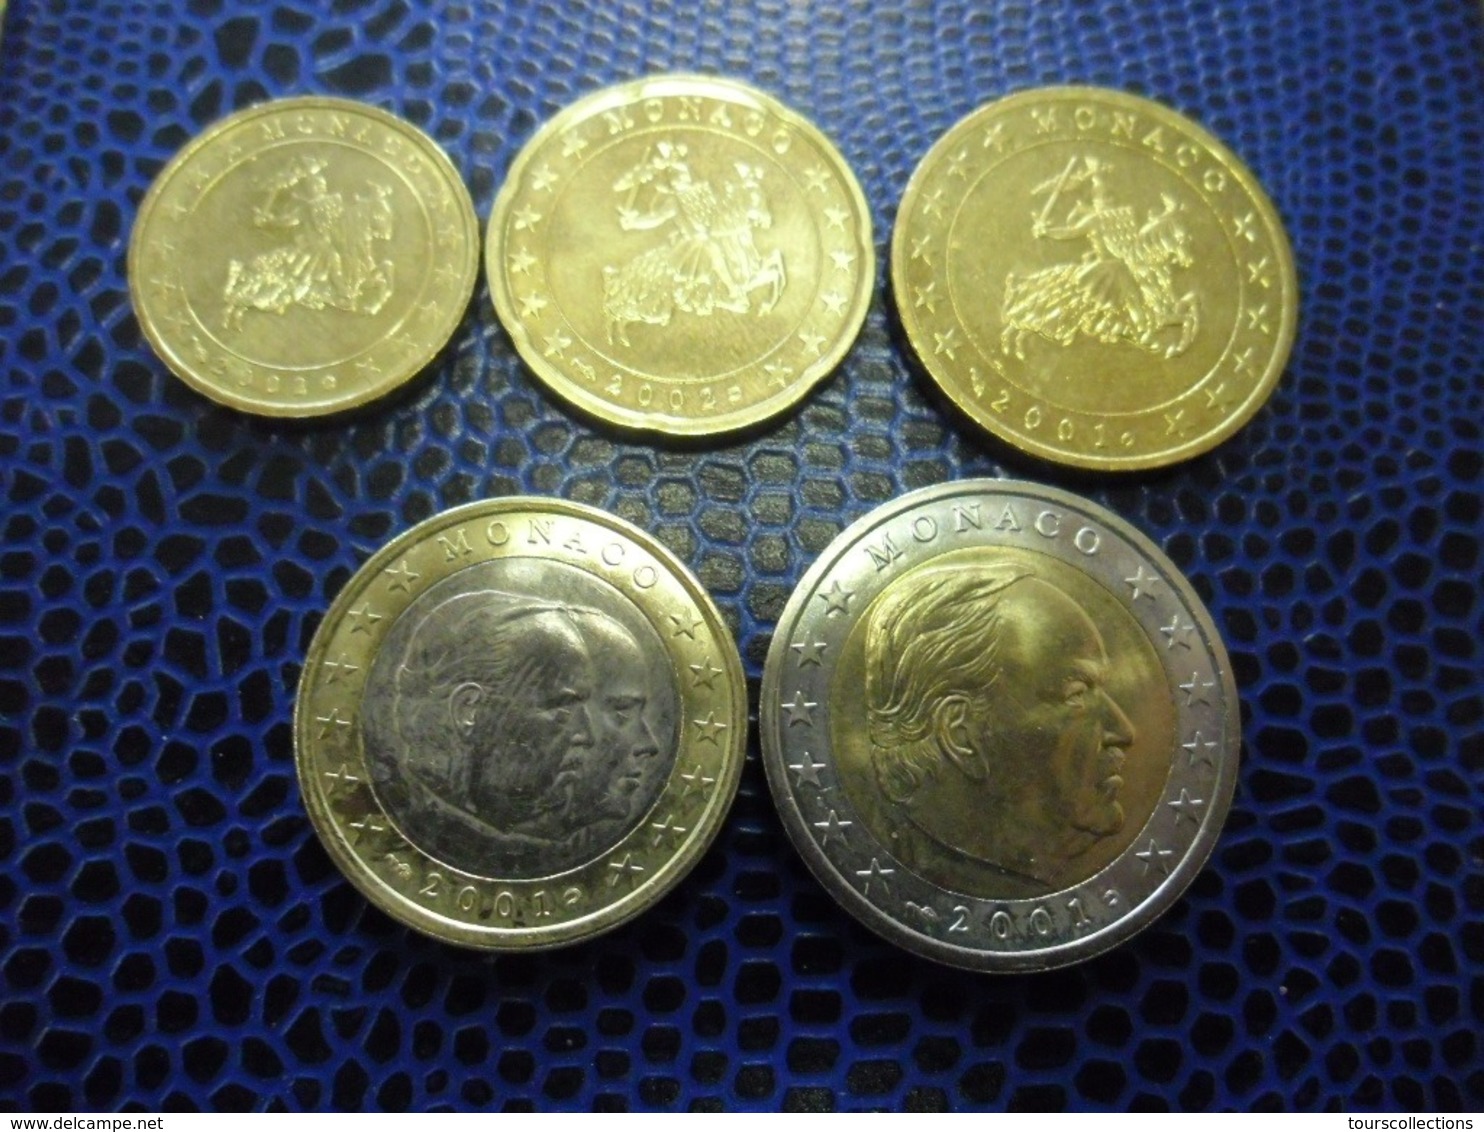 EUROS MONACO 10 Cts, 20 Cts, 50 Centimes De 2002 Et 1 € , 2 € De 2001 - Monaco